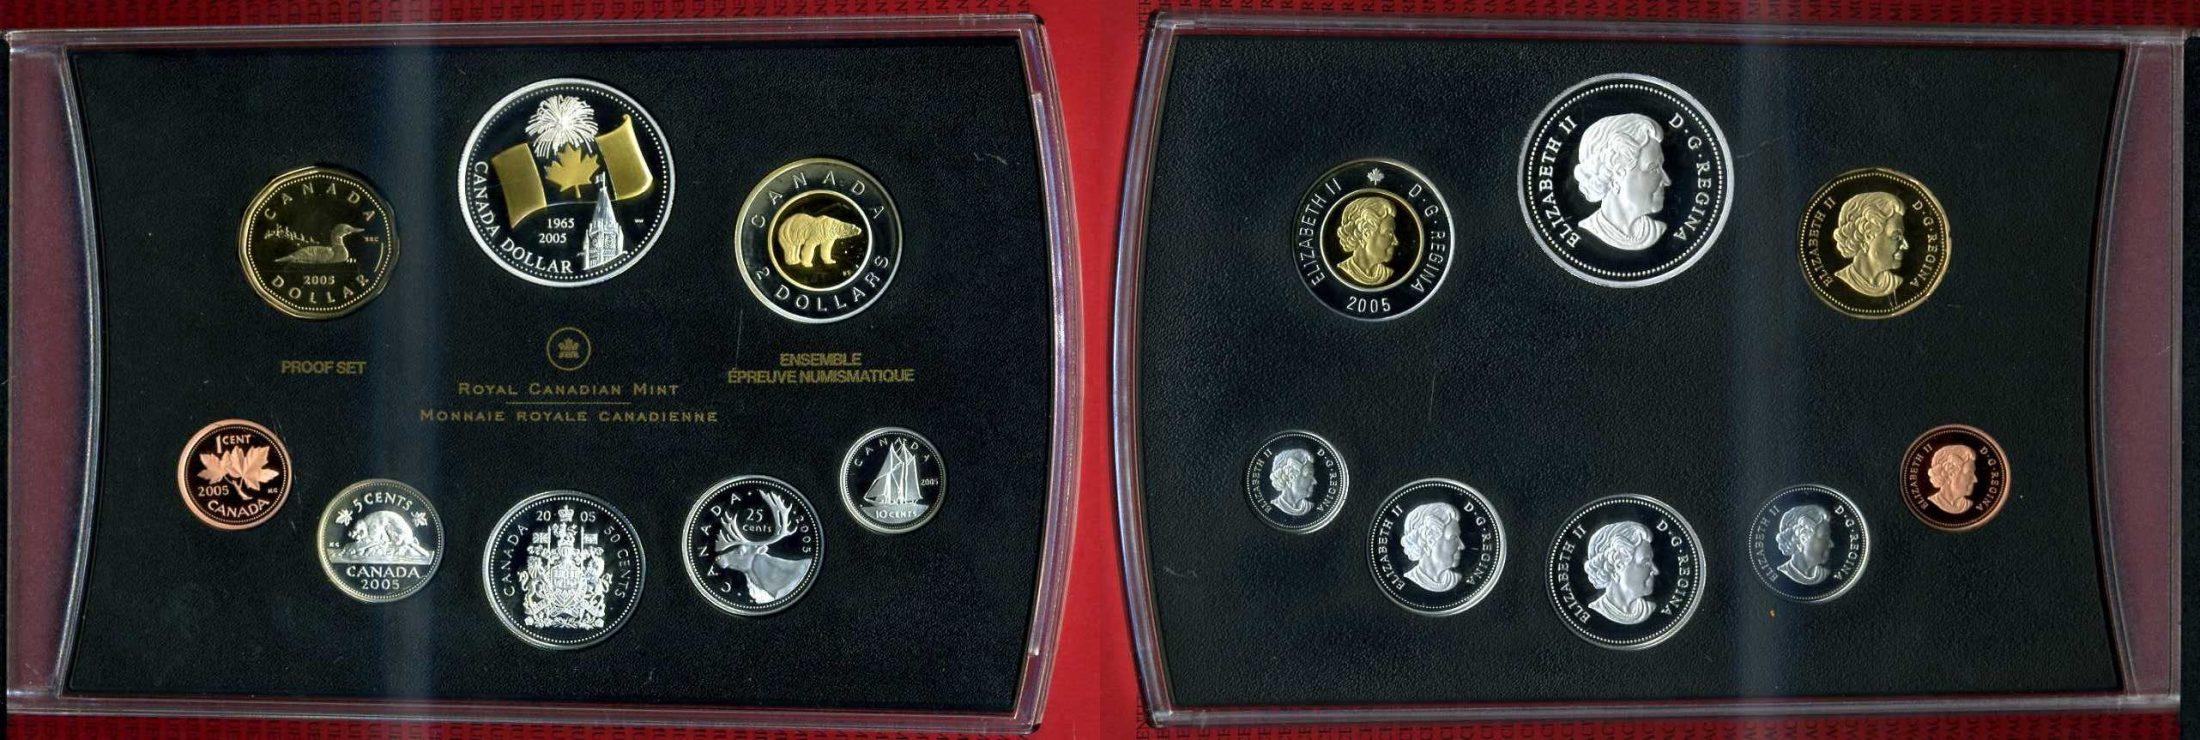 Foto Kanada, Canada Kursmünzensatz Kms mit Goldapplikation 2005